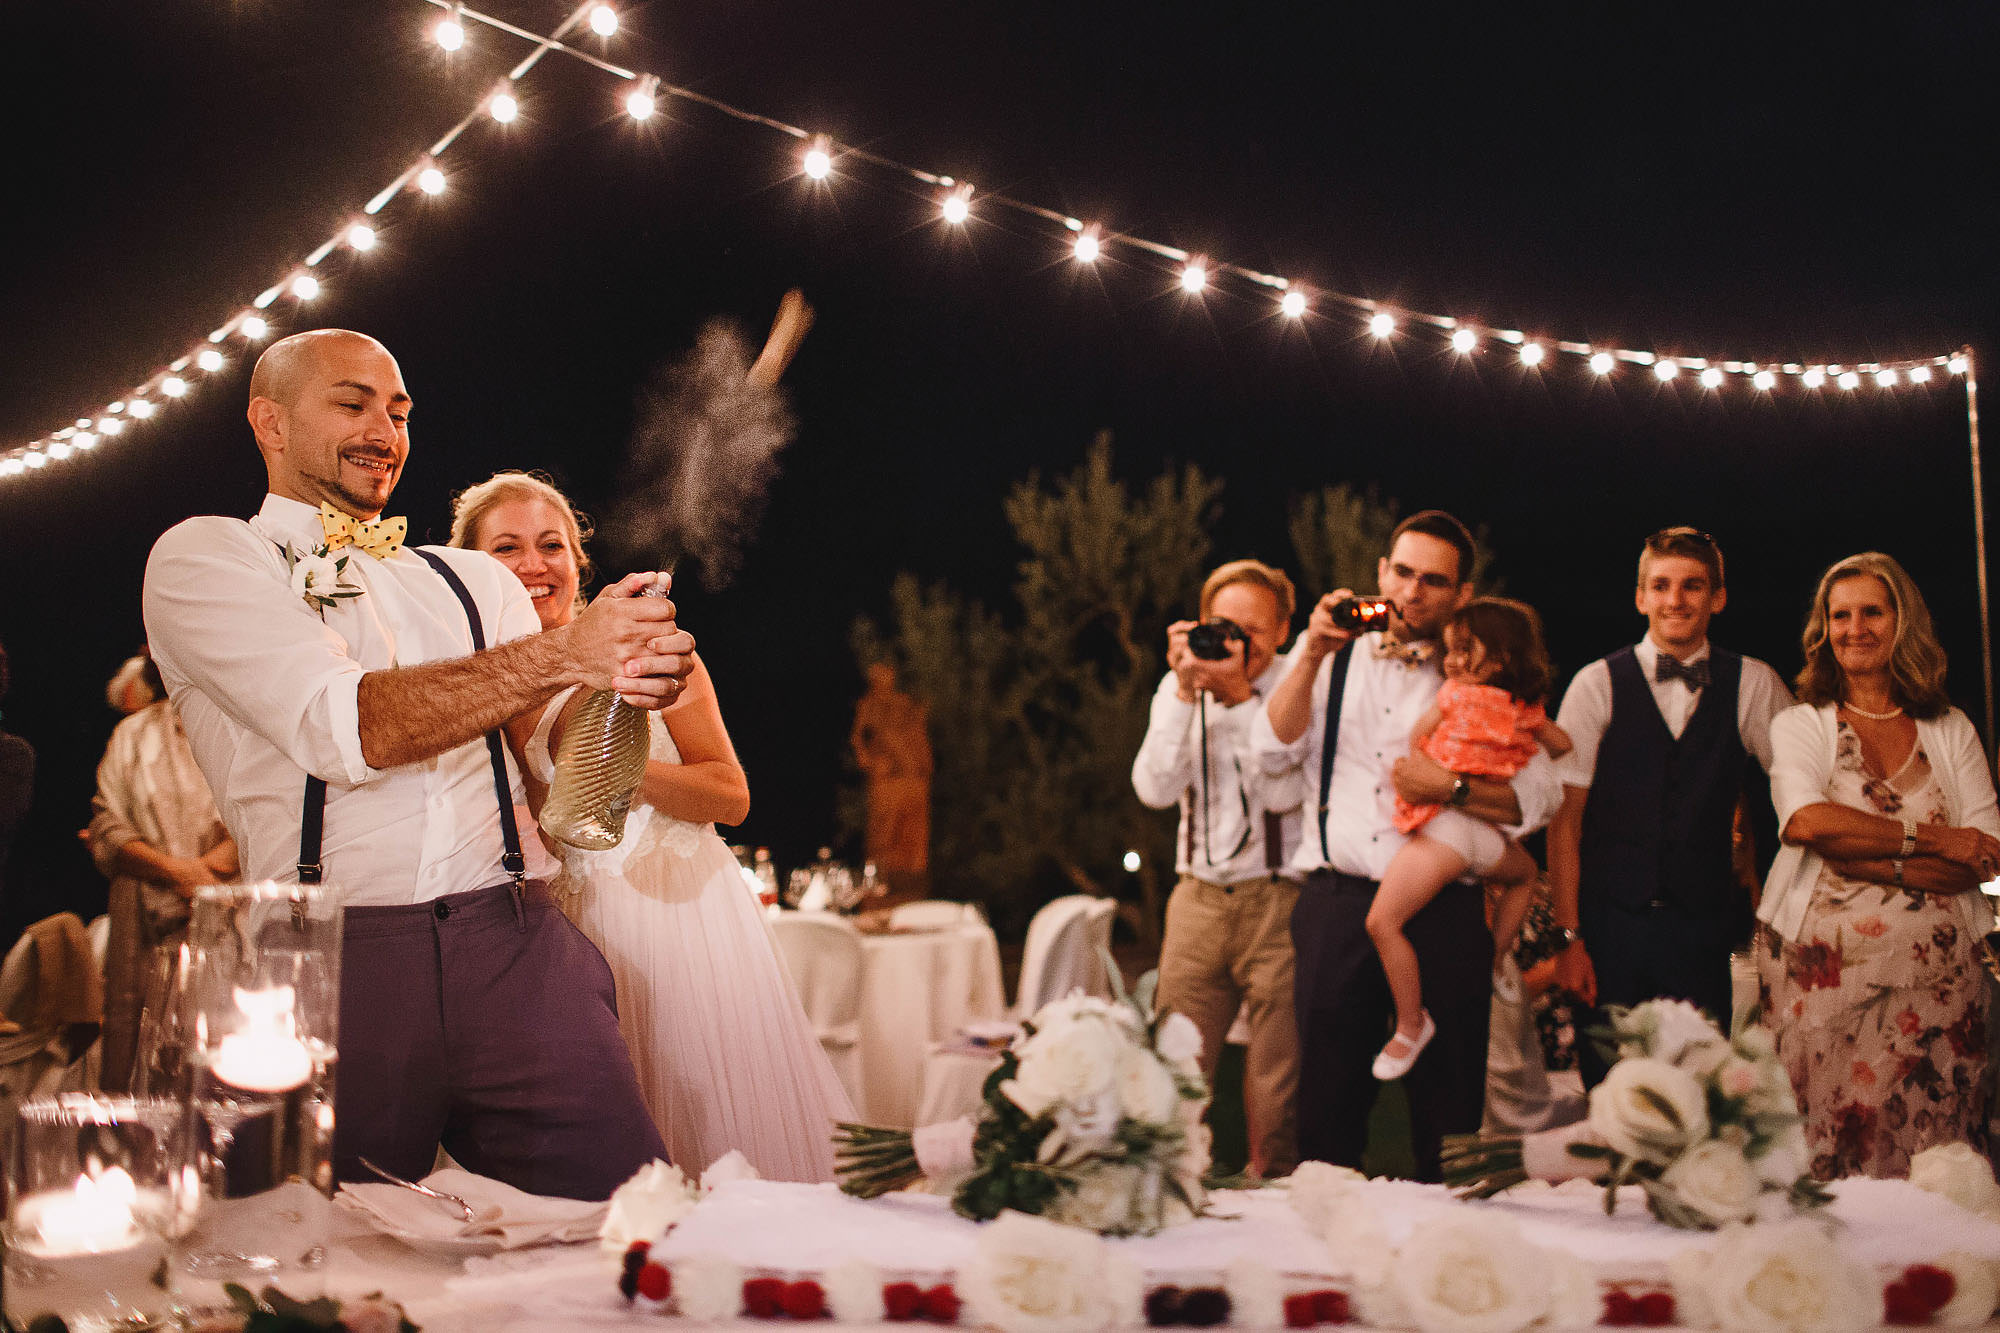 Filigare tuscany wedding photography